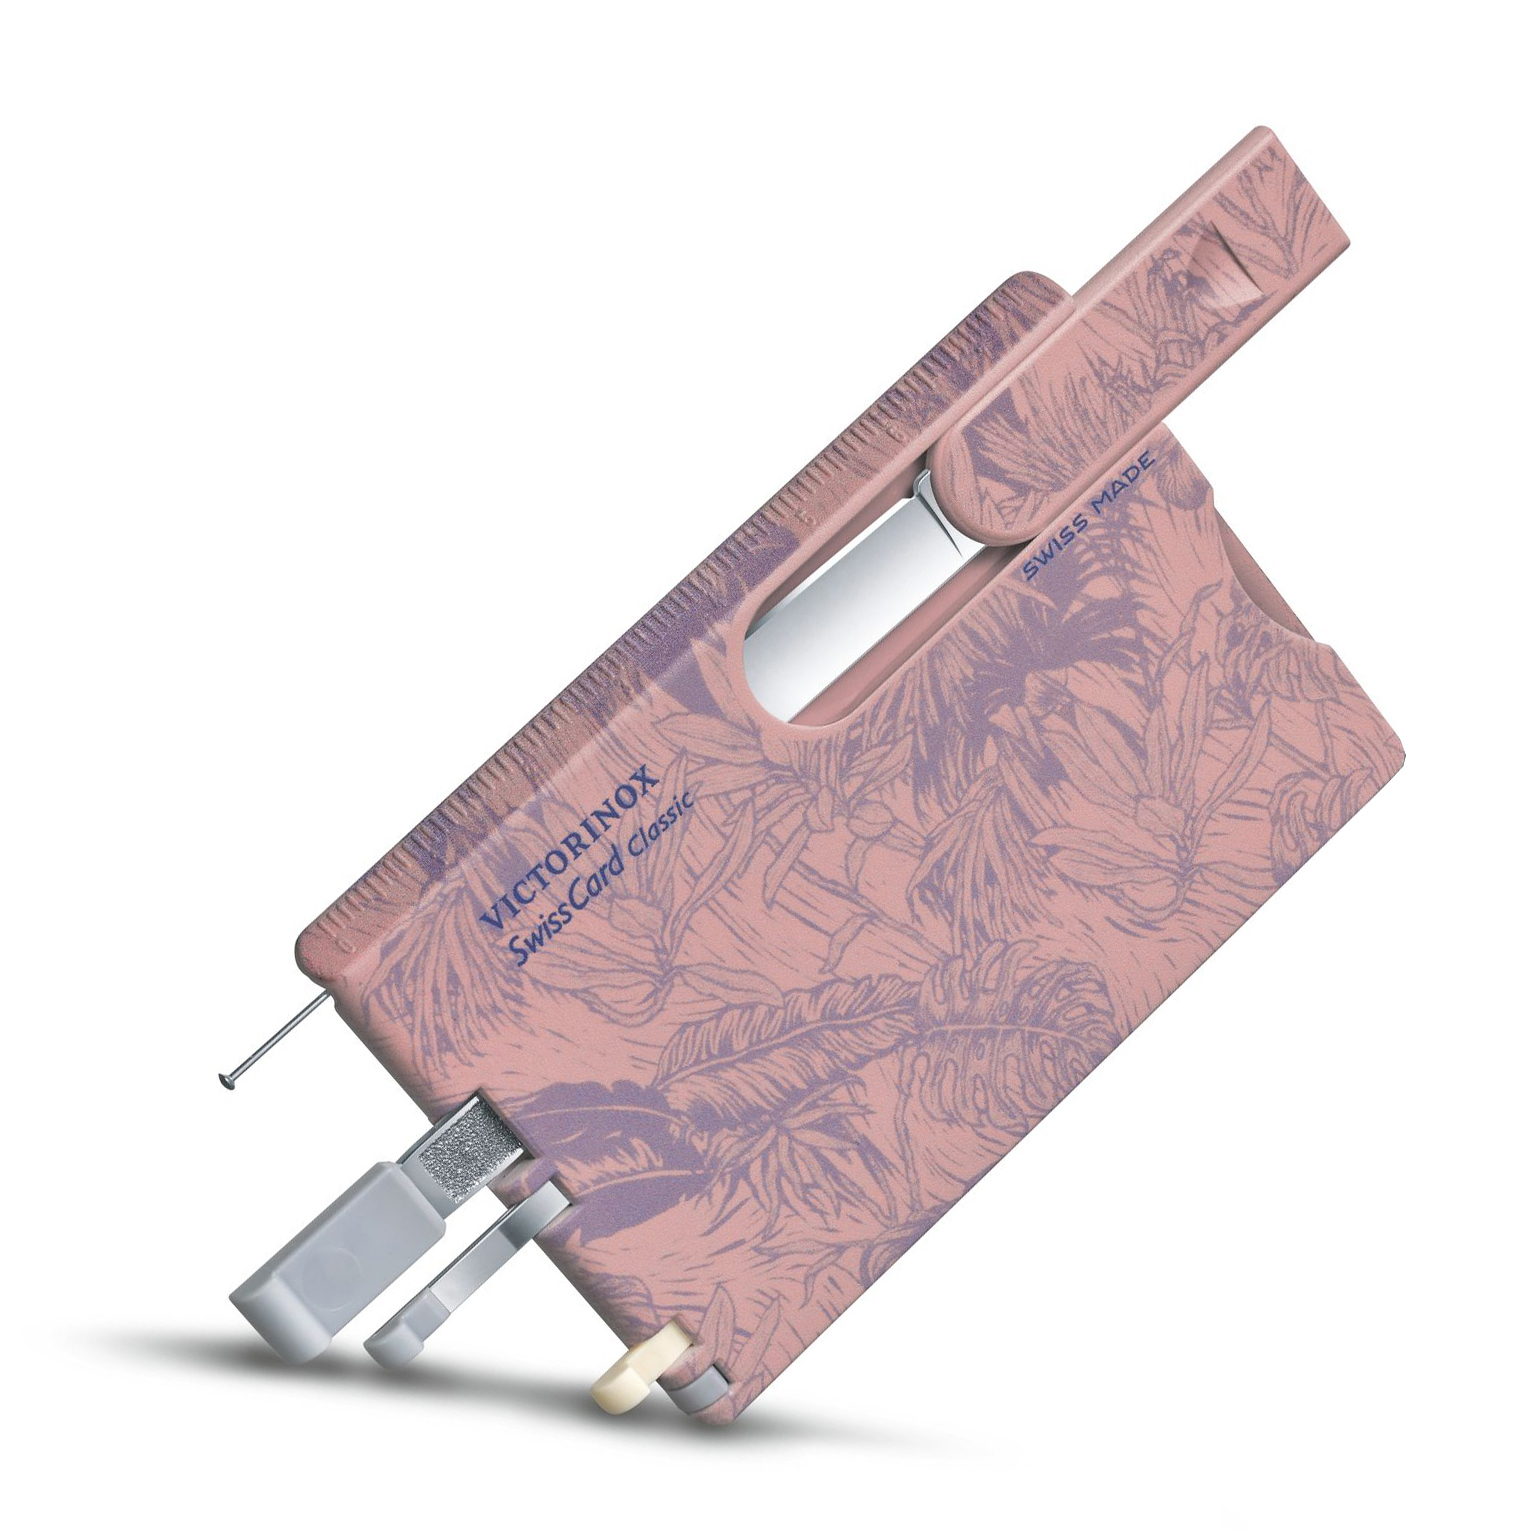 Швейцарская карта Victorinox SwissCard Classic, сталь X50CrMoV15, рукоять ABS-Пластик, розовый от Ножиков